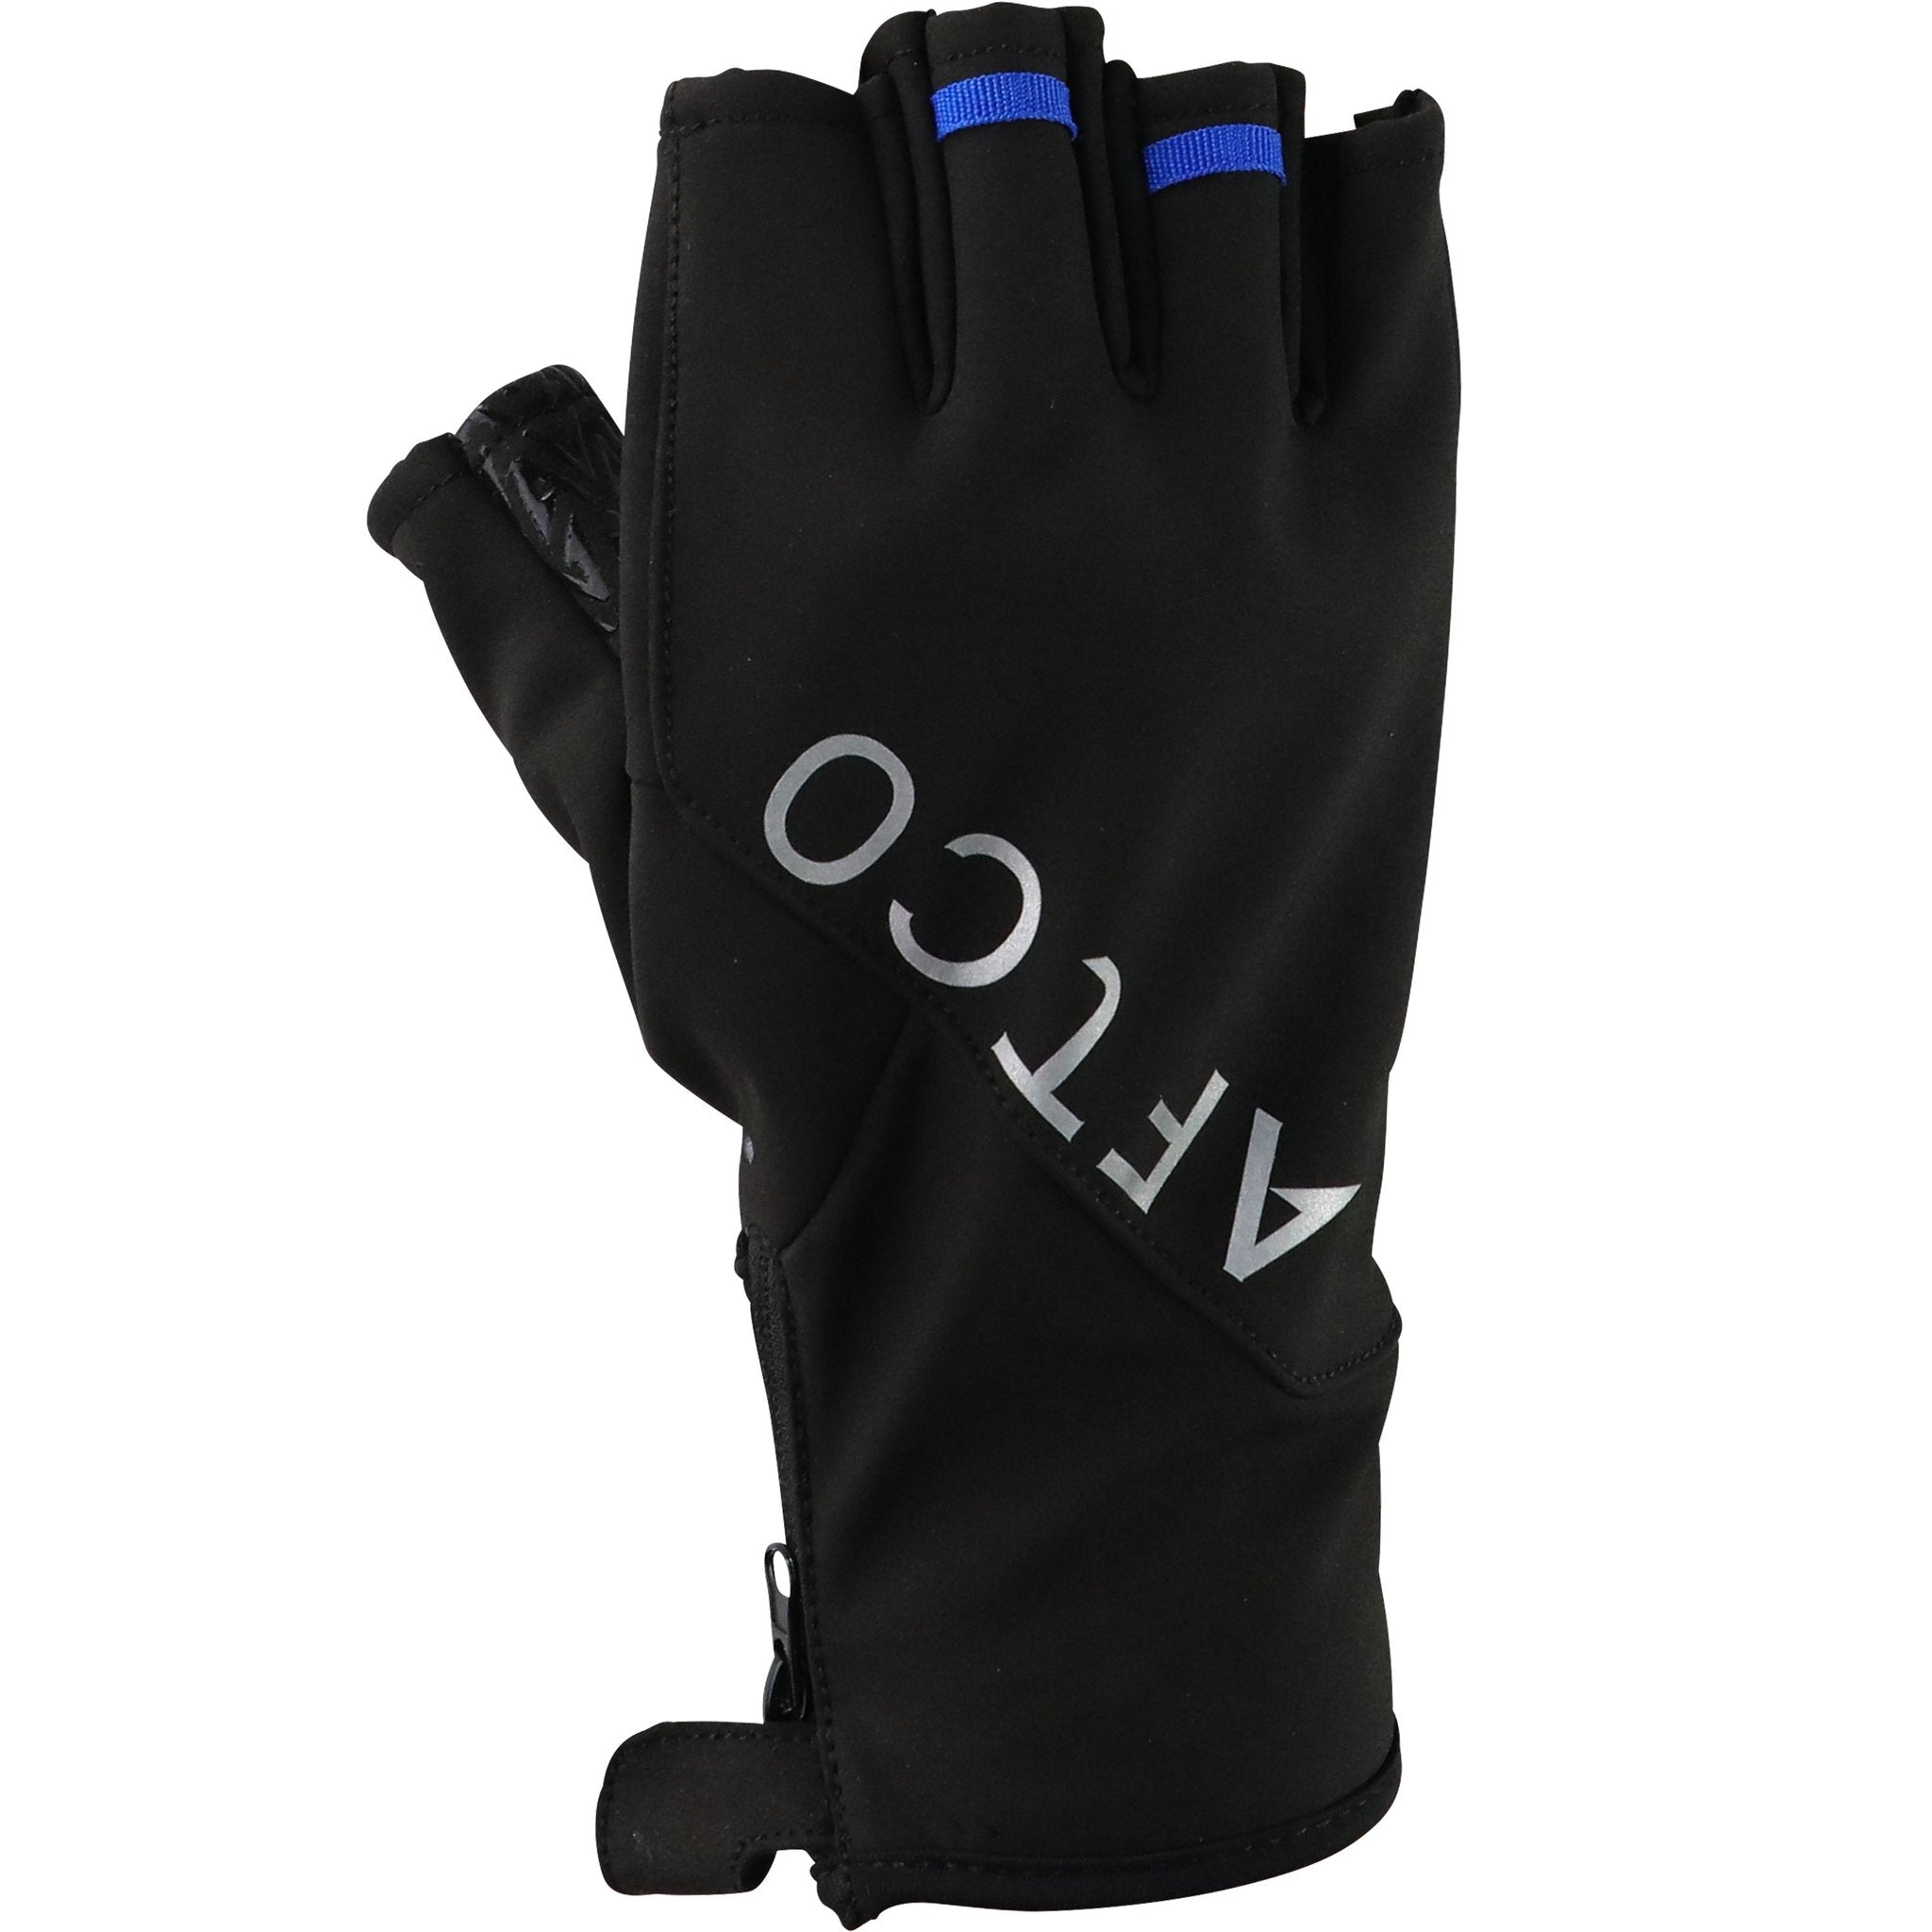 AFTCO Windblok Gloves - Black/Blue - L